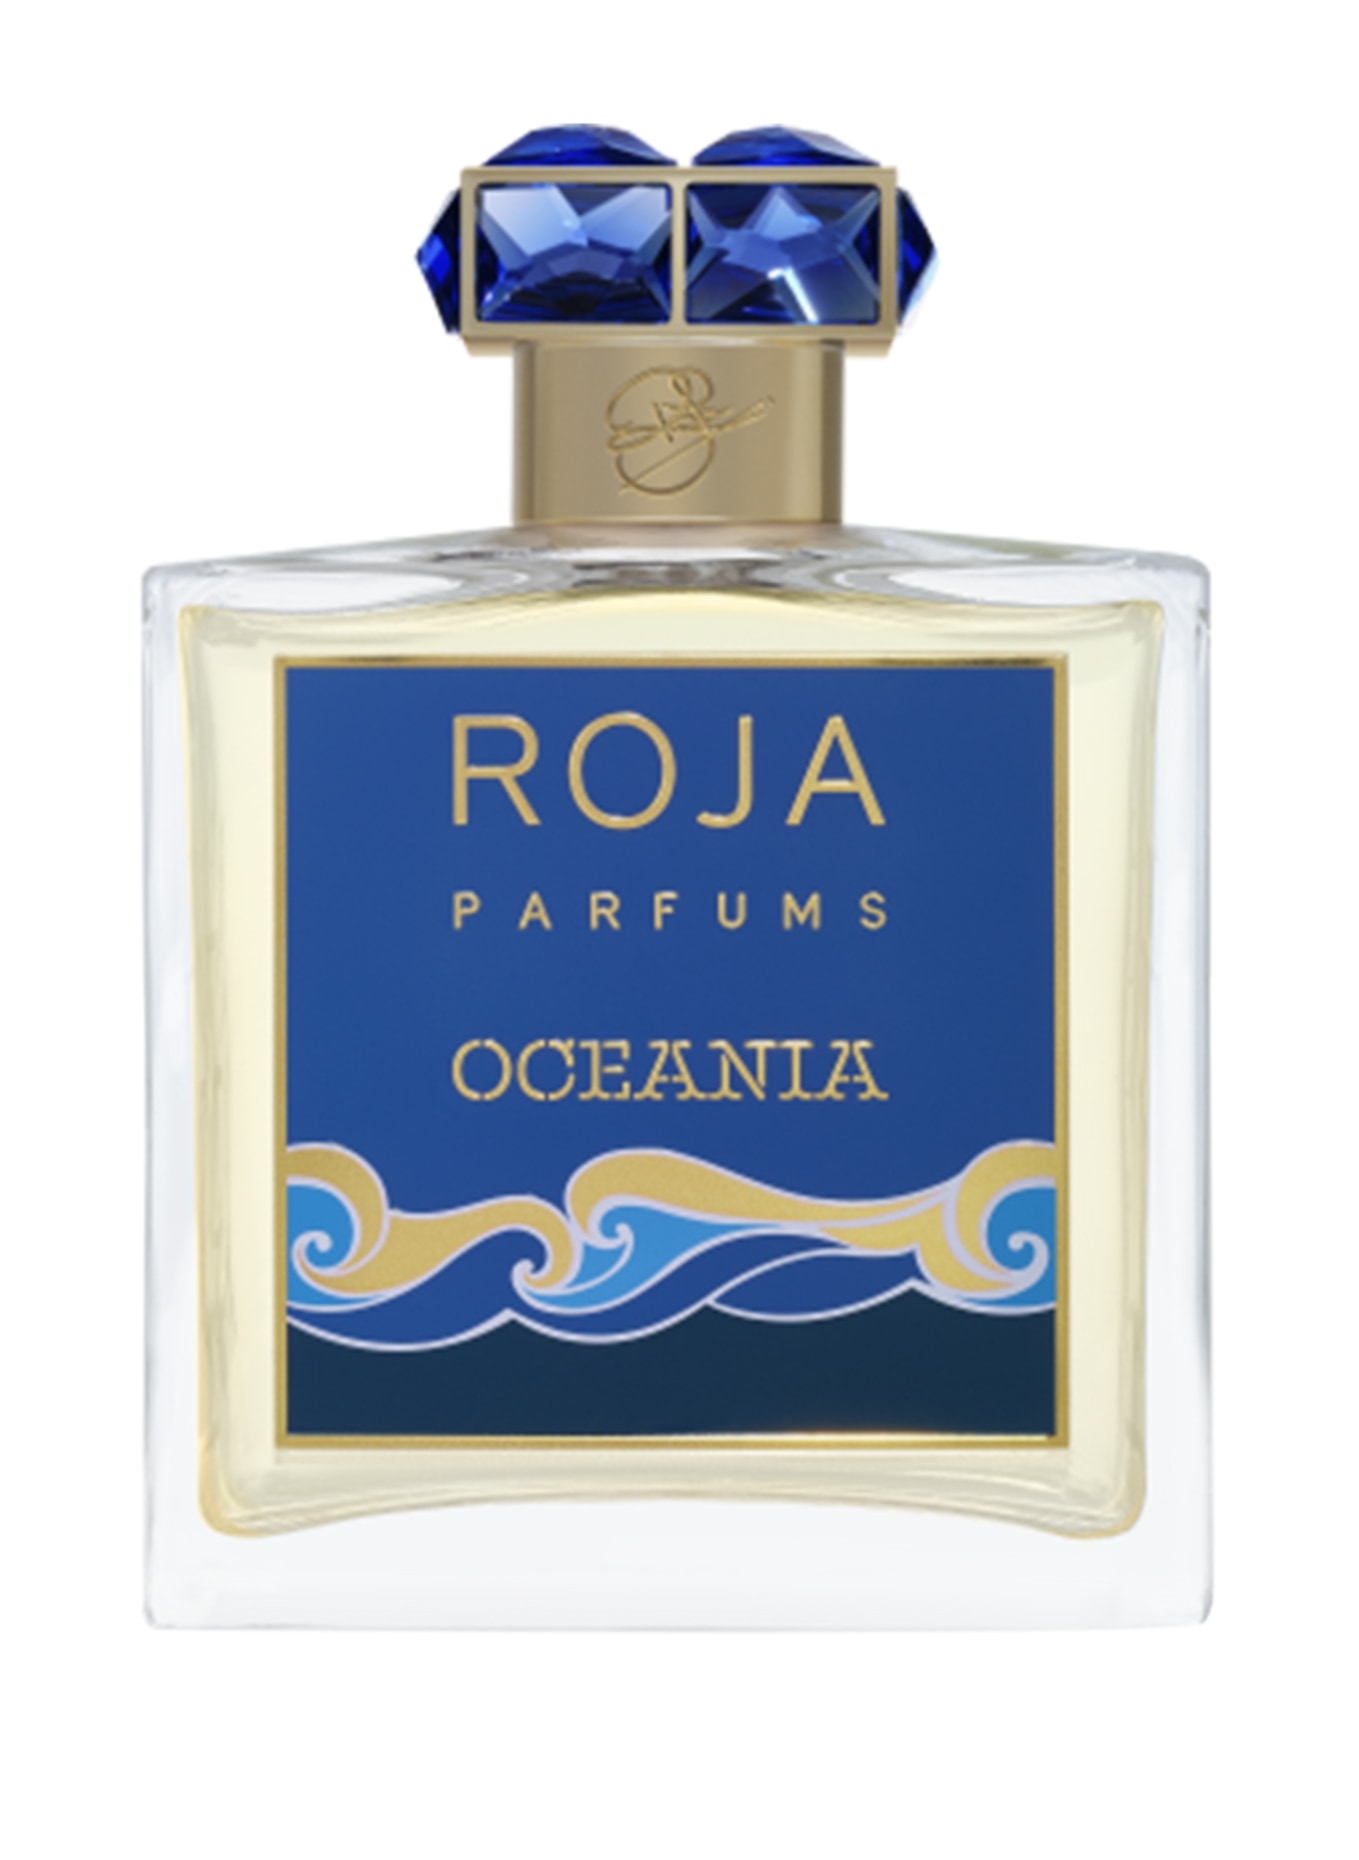 ROJA PARFUMS OCEANIA (Obrázek 1)